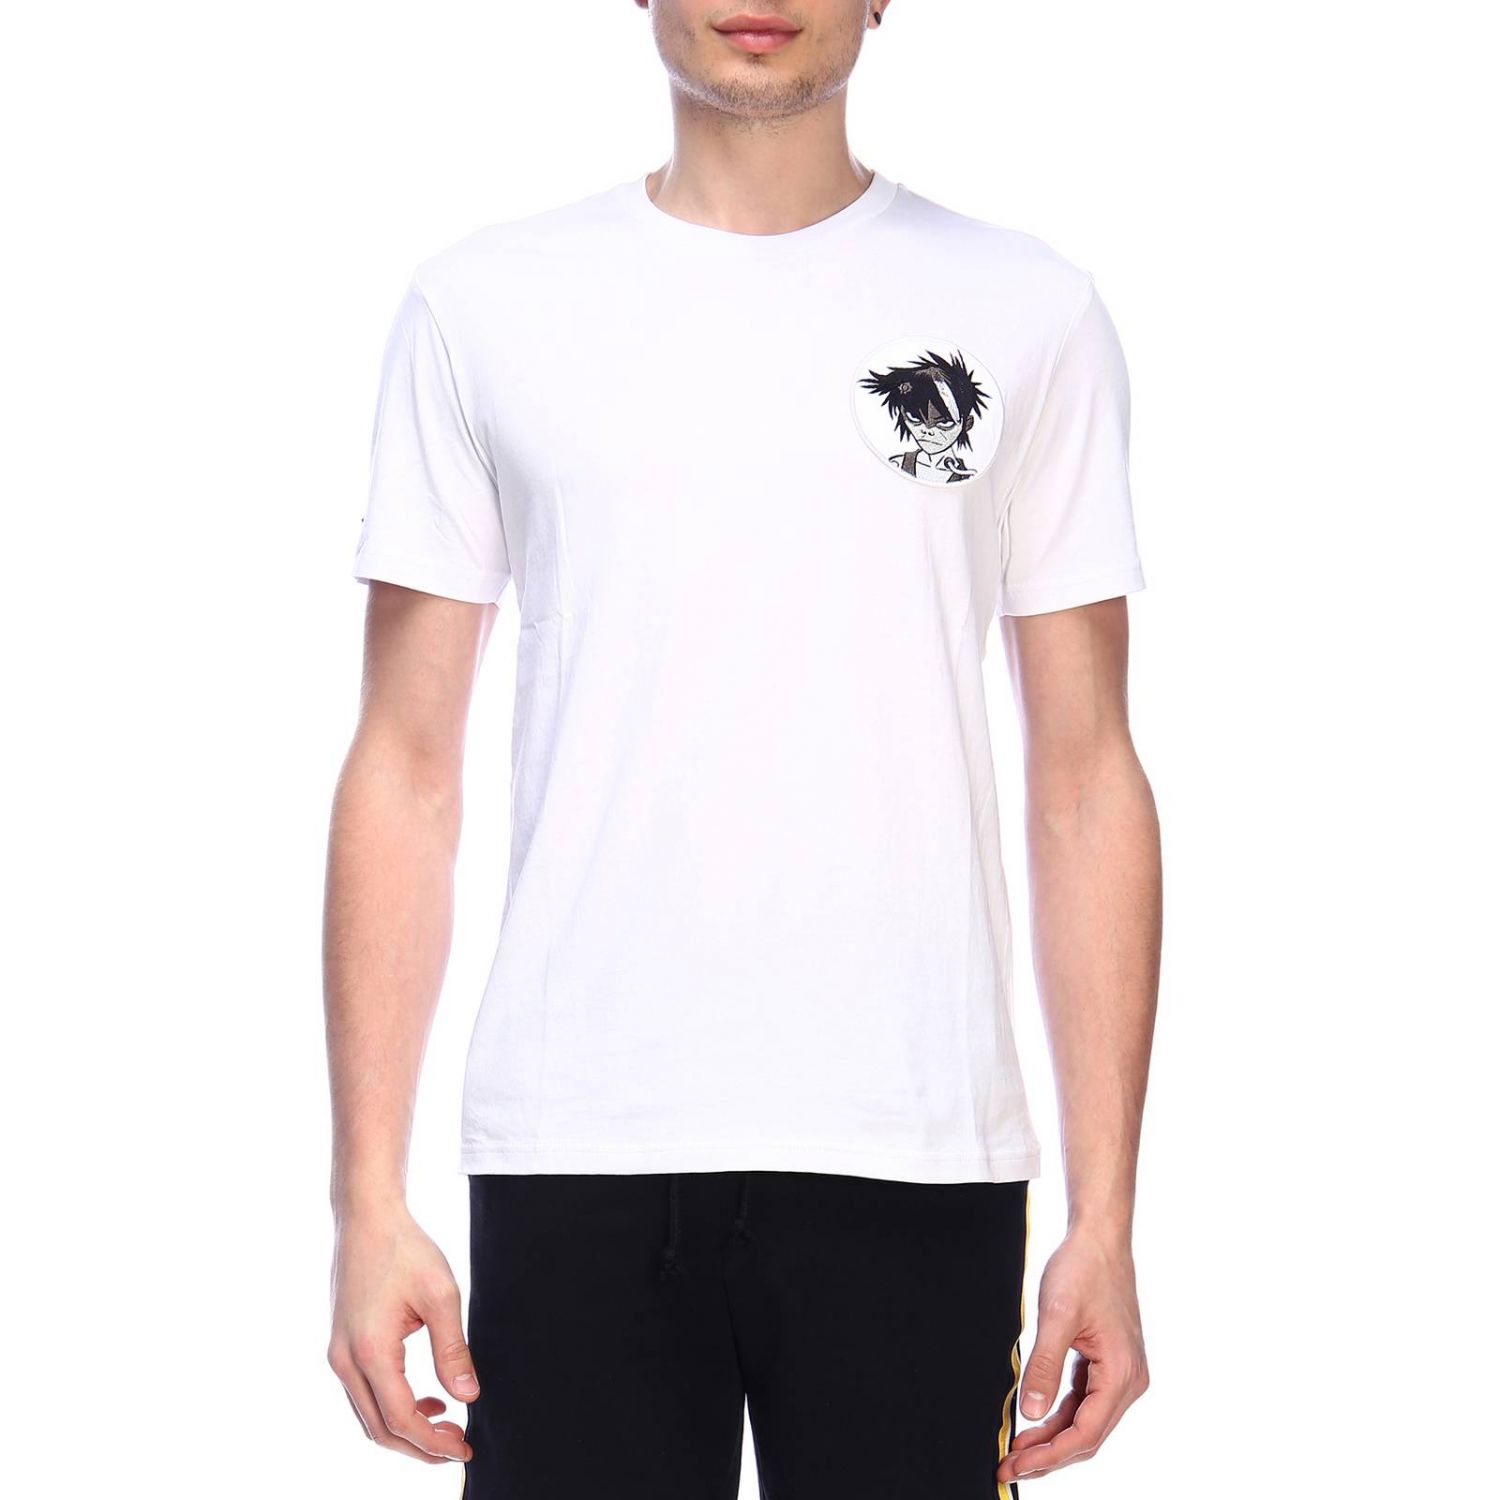 Geym Outlet: T-shirt men | T-Shirt Geym Men White | T-Shirt Geym 02 ...